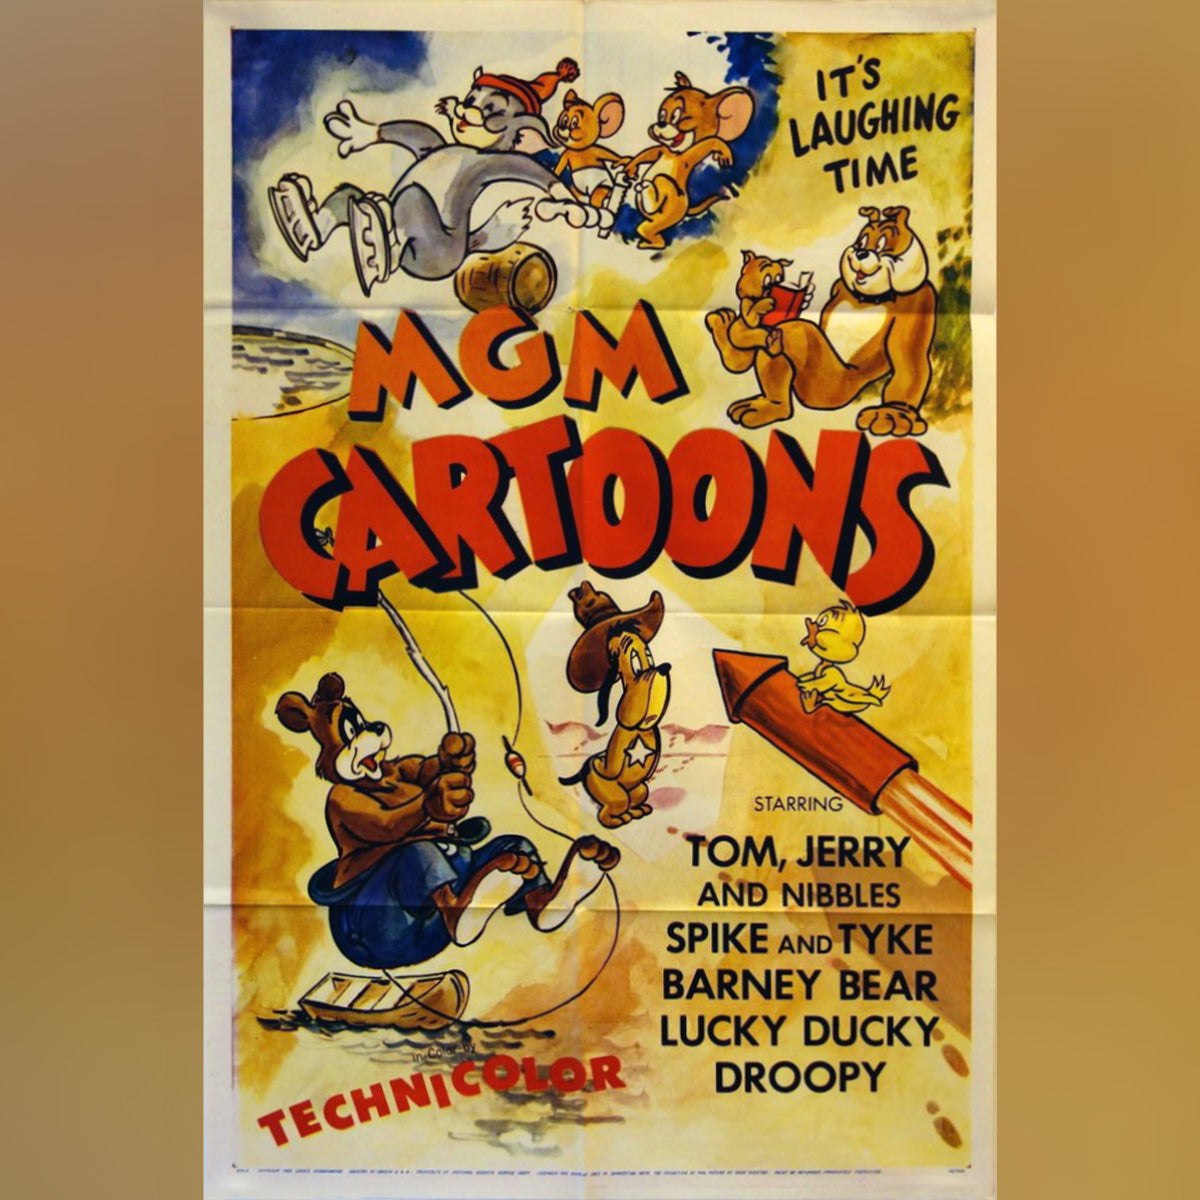 Original Movie Poster of Mgm Cartoons (1956)